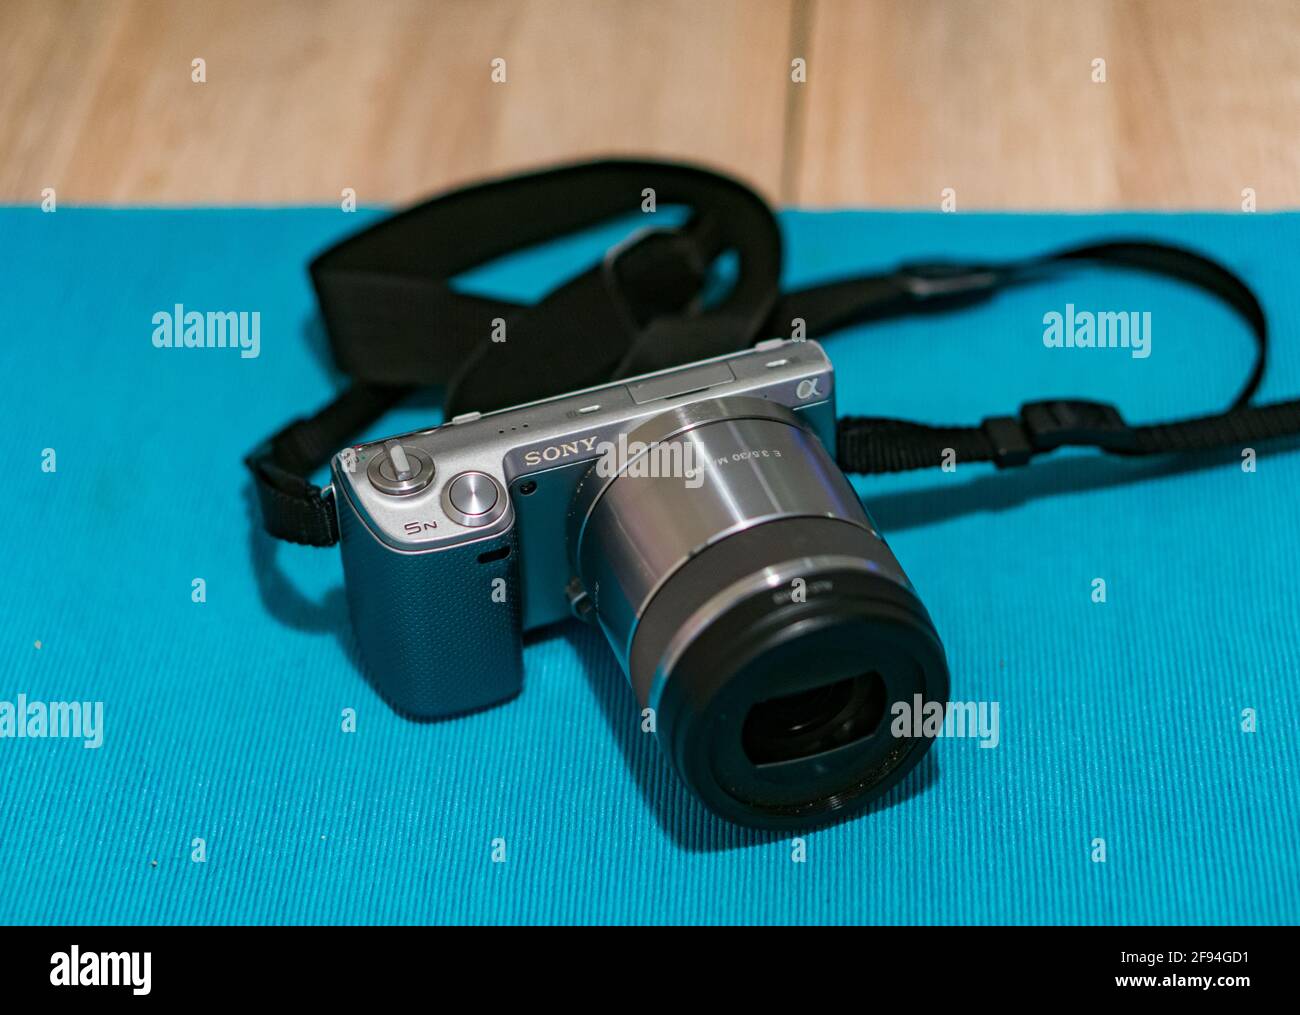 Sony nex 5n fotografías e imágenes de alta resolución - Alamy